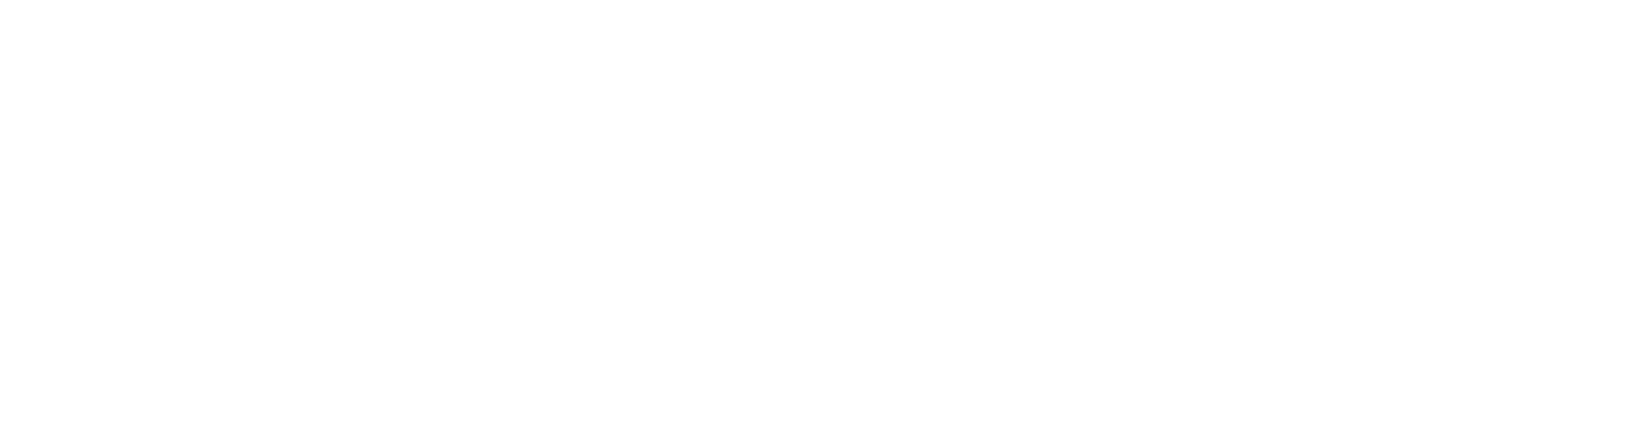 Ohio University logo, OU logo